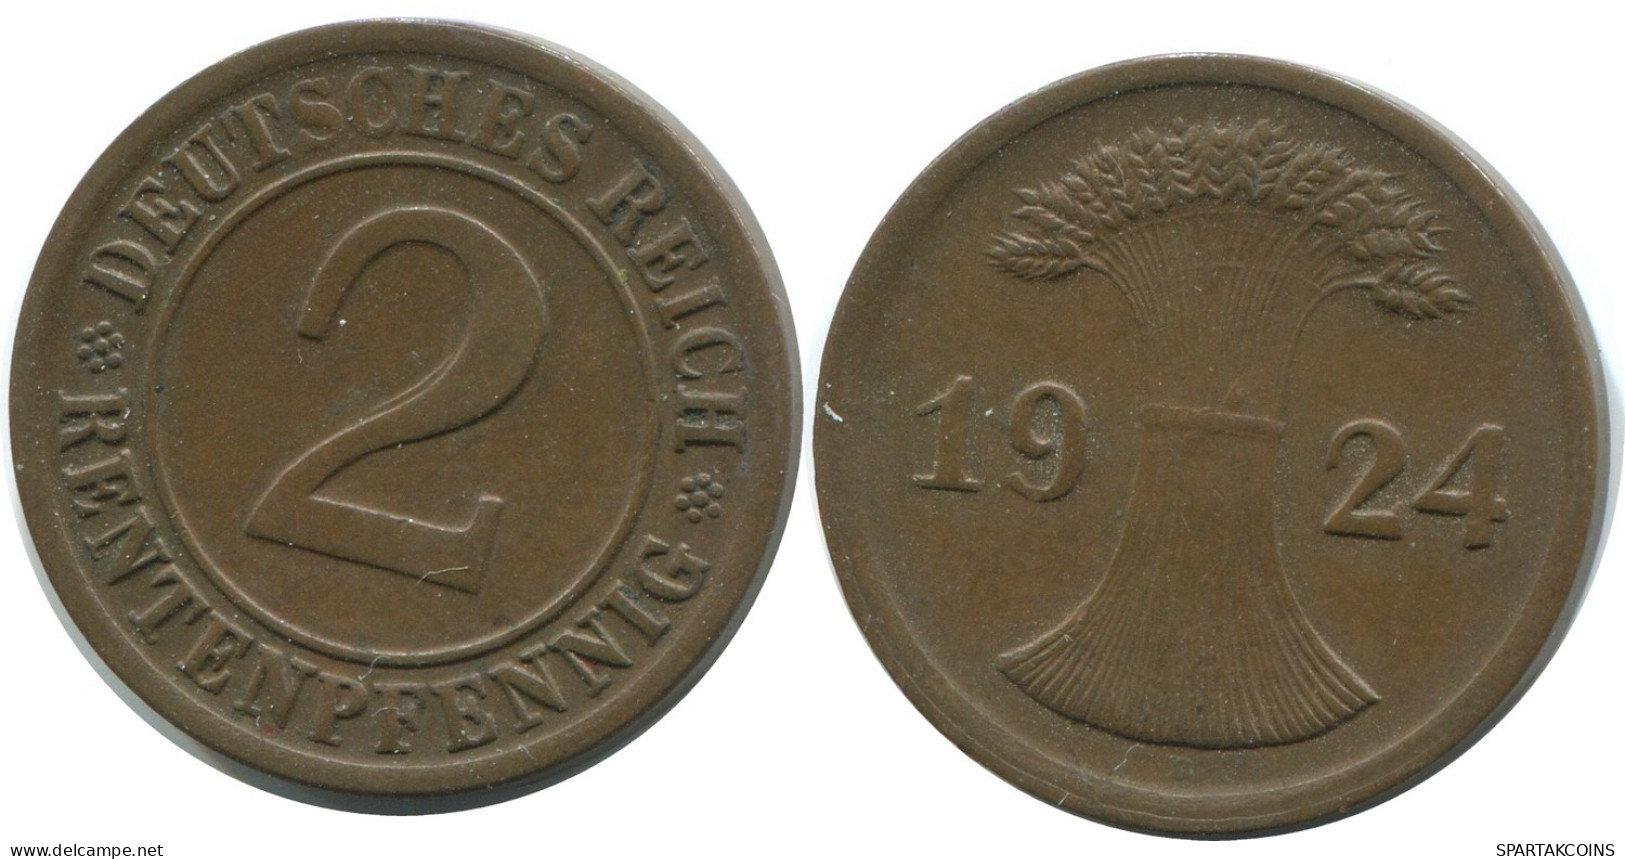 2 RENTENPFENNIG 1924 D ALEMANIA Moneda GERMANY #AE277.E - 2 Rentenpfennig & 2 Reichspfennig